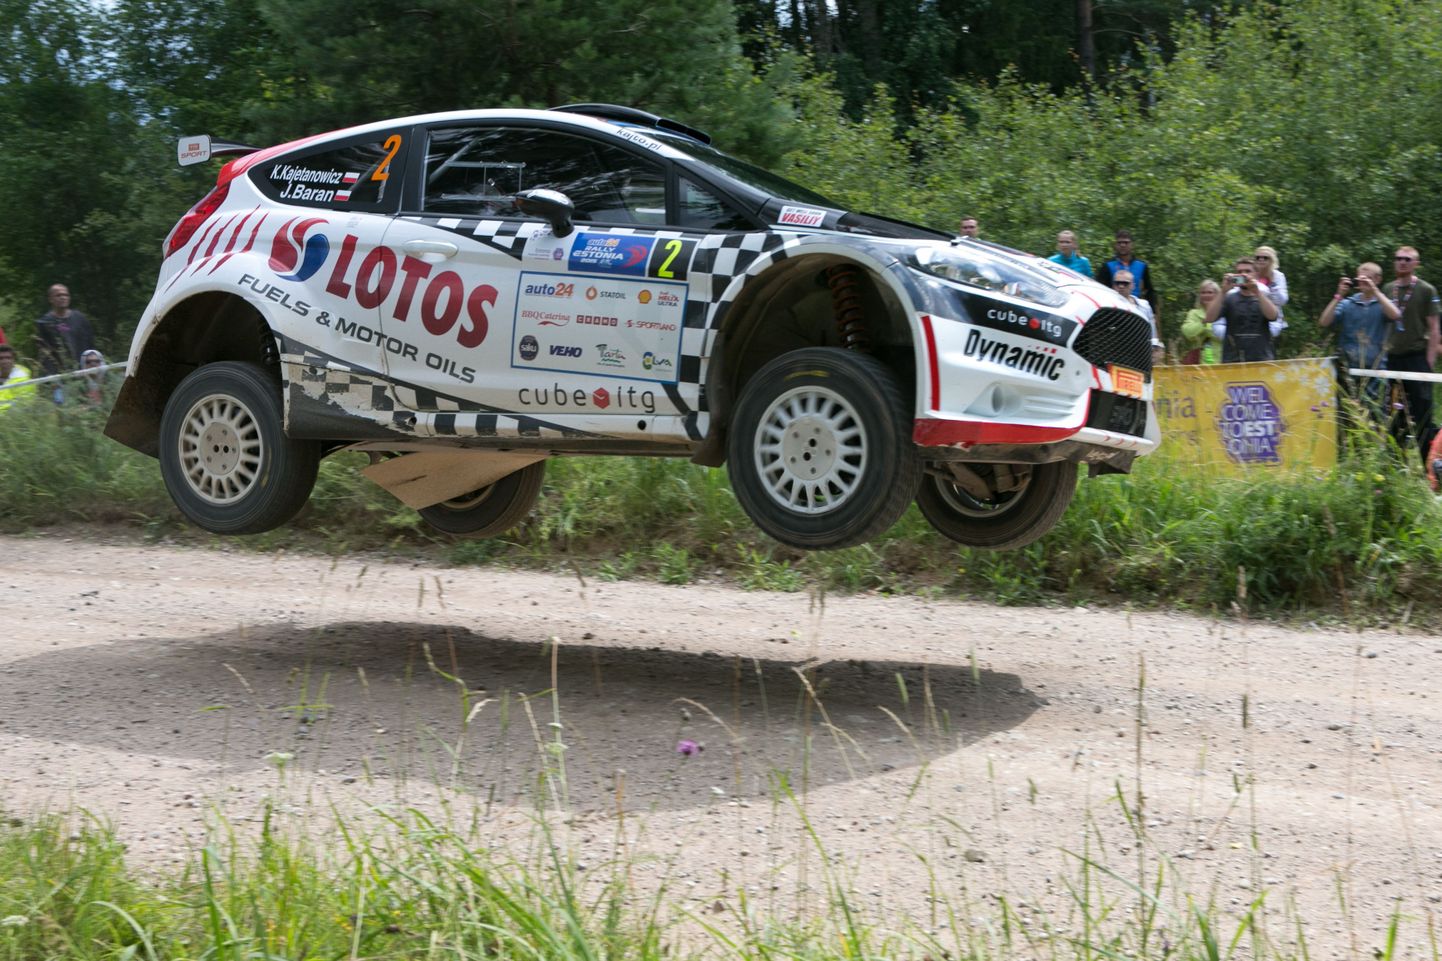 ERC-sarjas kihutasid Rally Estonial mõned tippsõitjad nagu Kajetan Kajetanowicz, kuid stardirivi muutus nende selja taga kiiresti hõredaks. MM-ralli tooks Lõuna-Eestisse kangemad sõitjad.